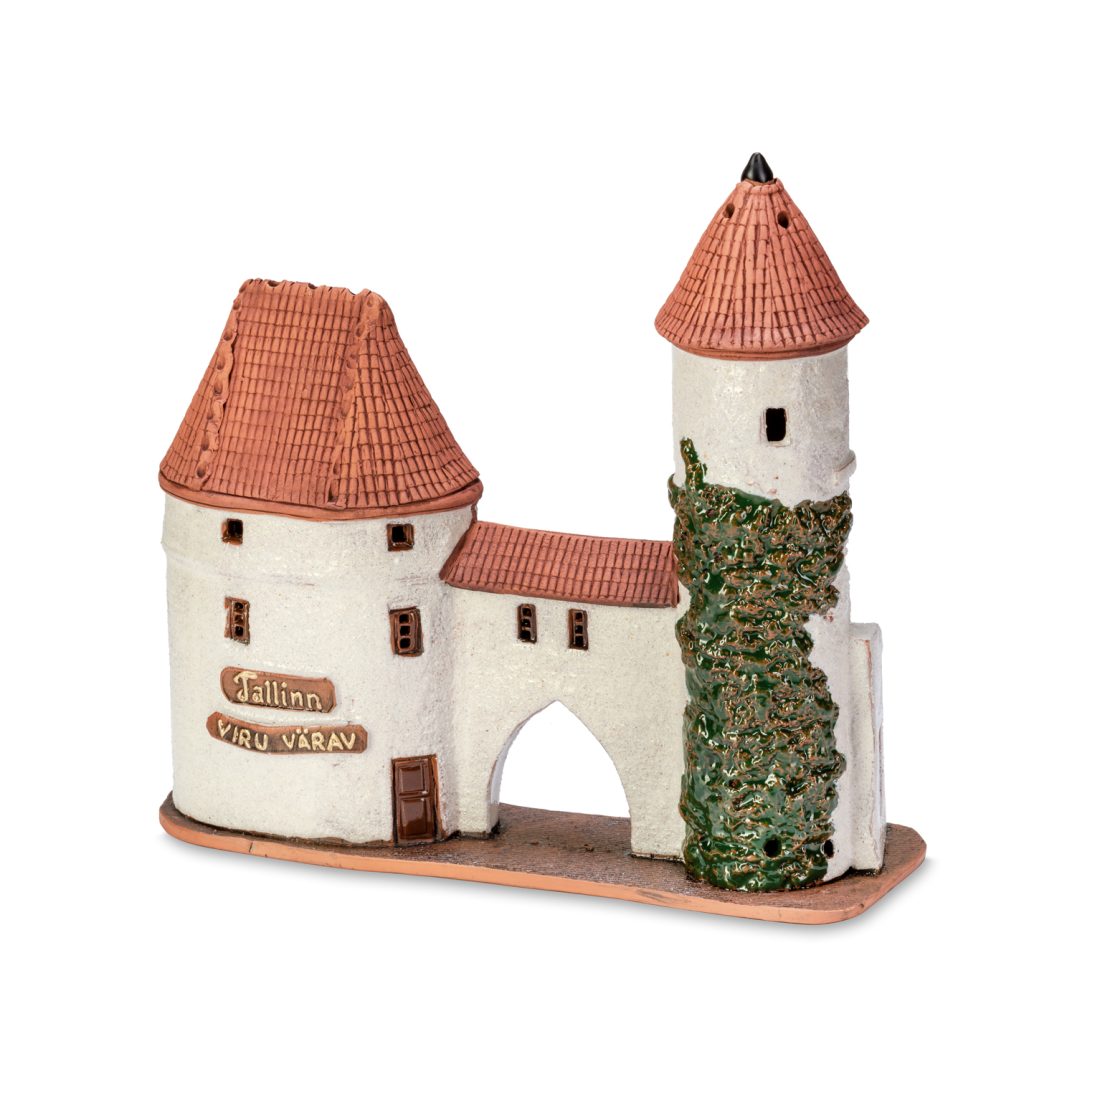 Handgemachte keramische Miniatur, originalgetreue Kopie eines Gebäudes in Tallinn TALL 11